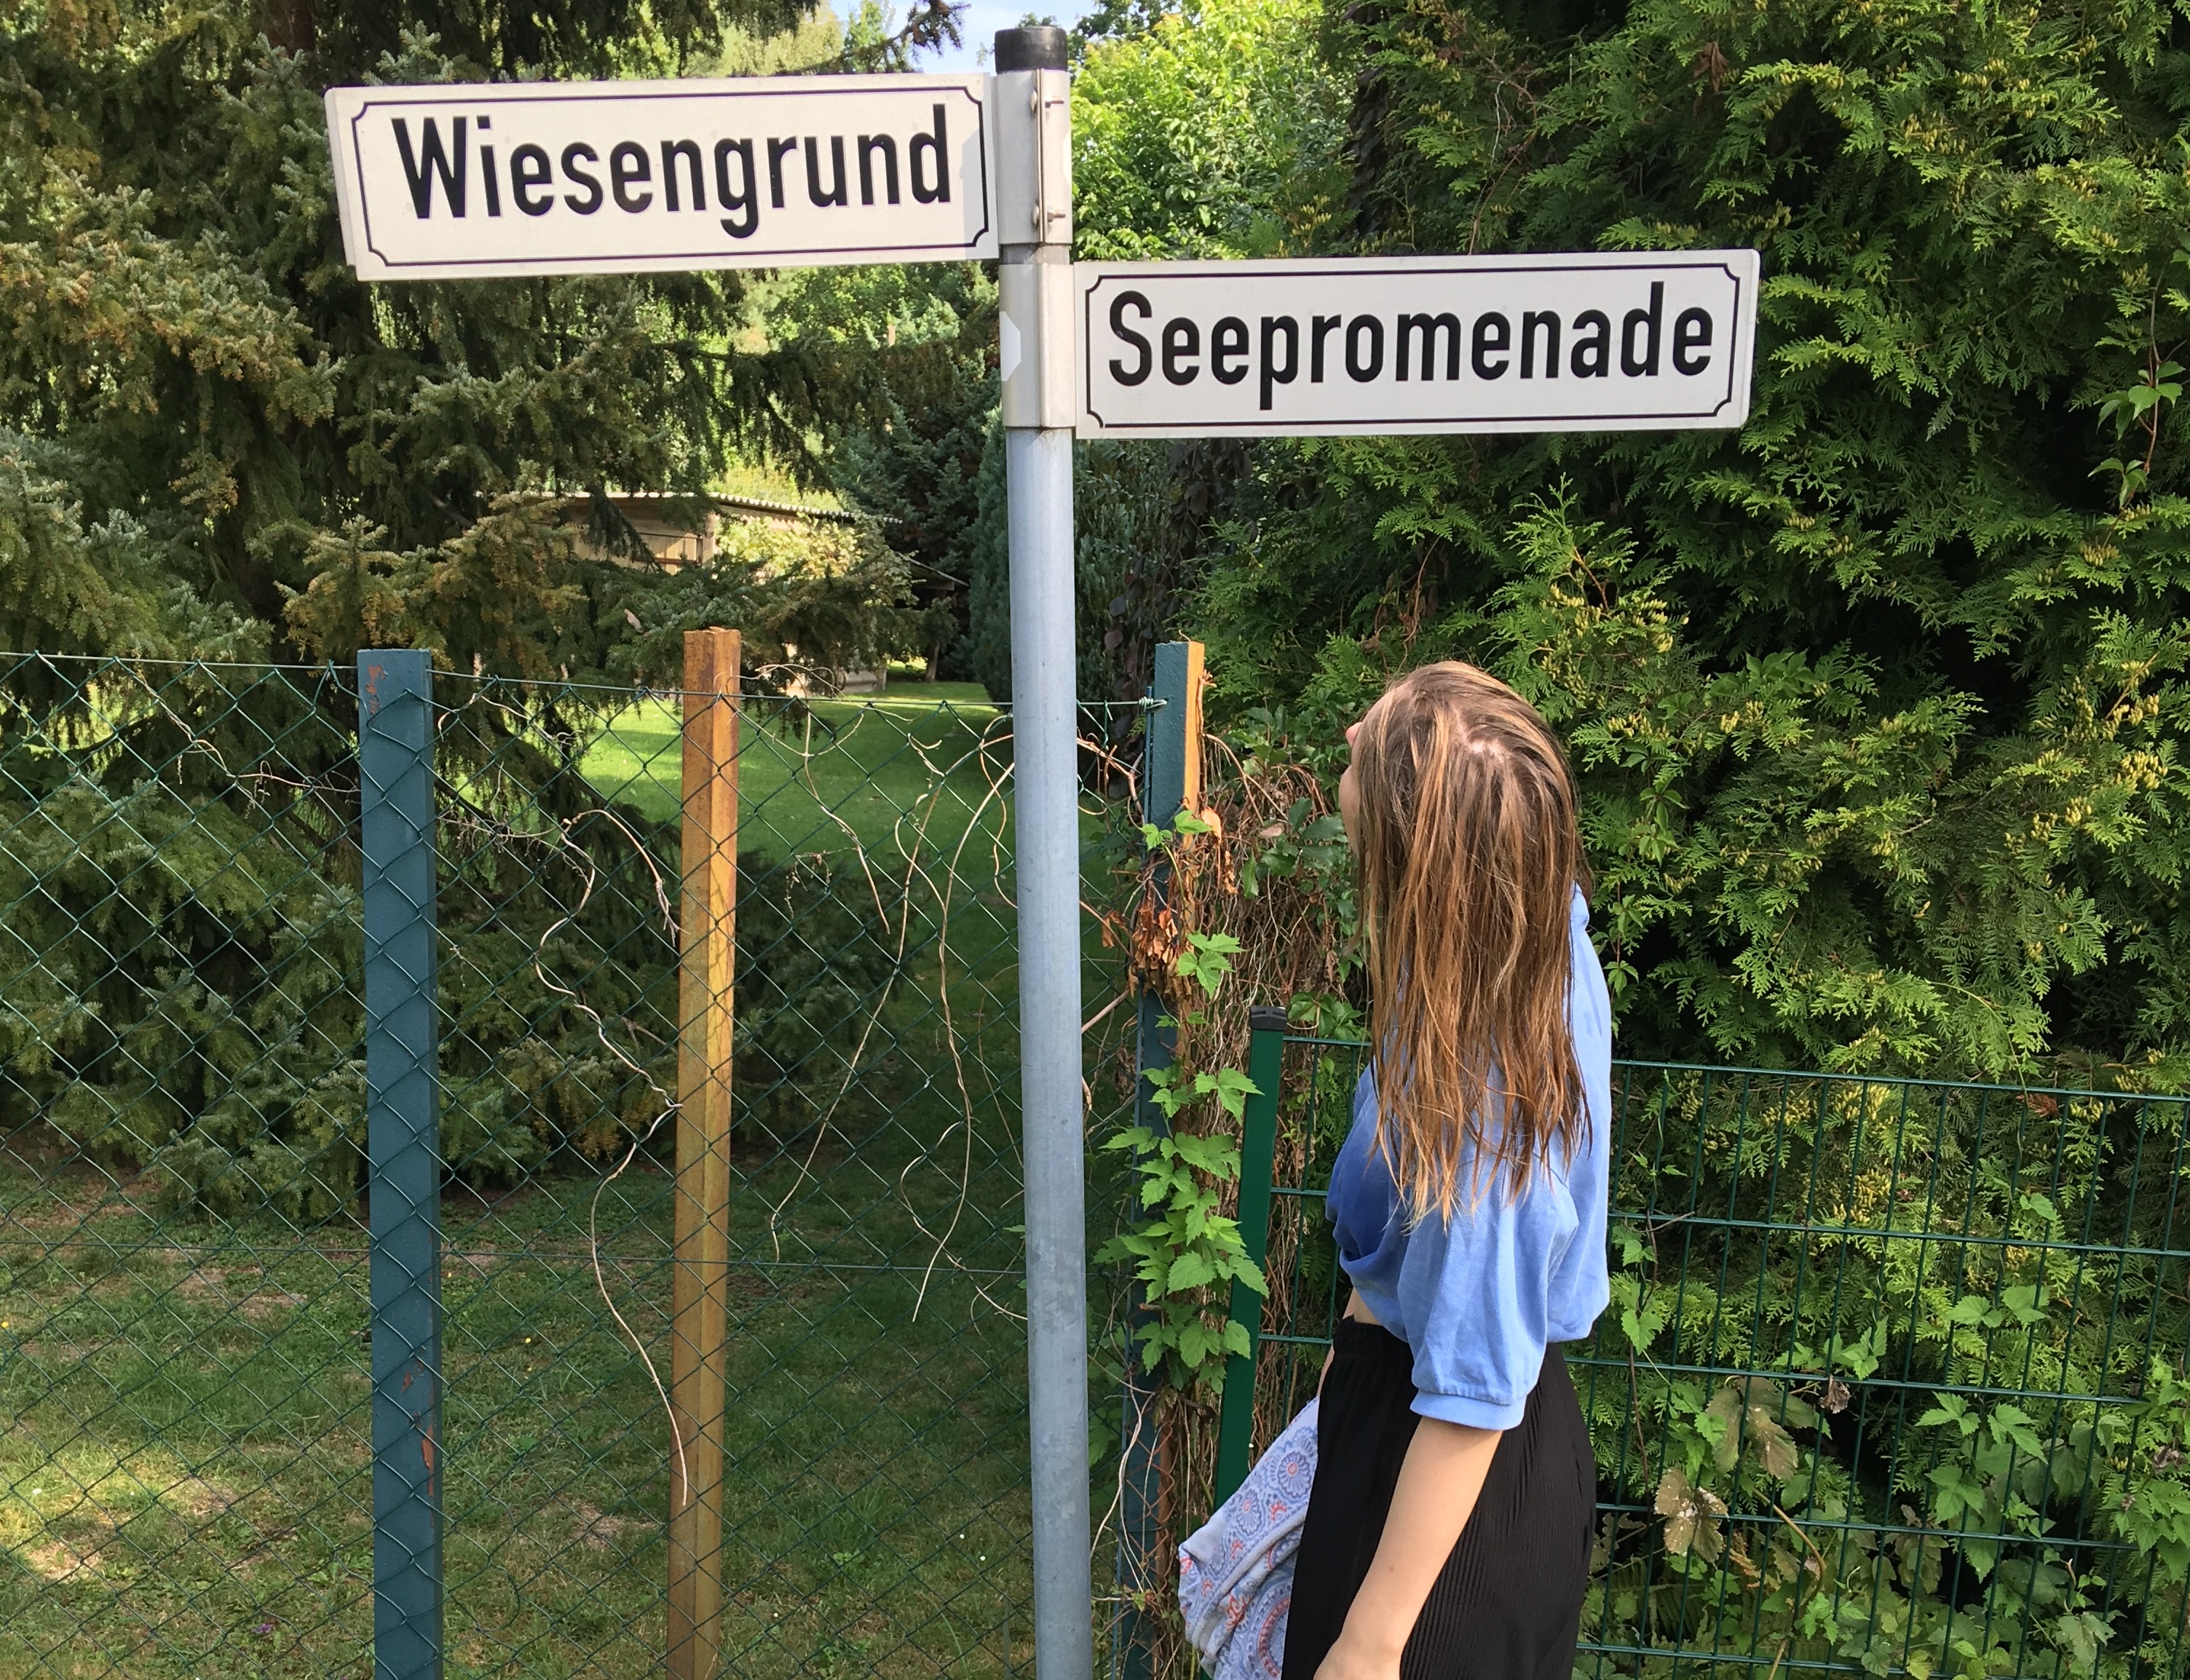 Frau betrachtet zwei Straßenschilder mit der Aufschrift "Wiesengrund" und "Seepromenade" auf einem Festival.